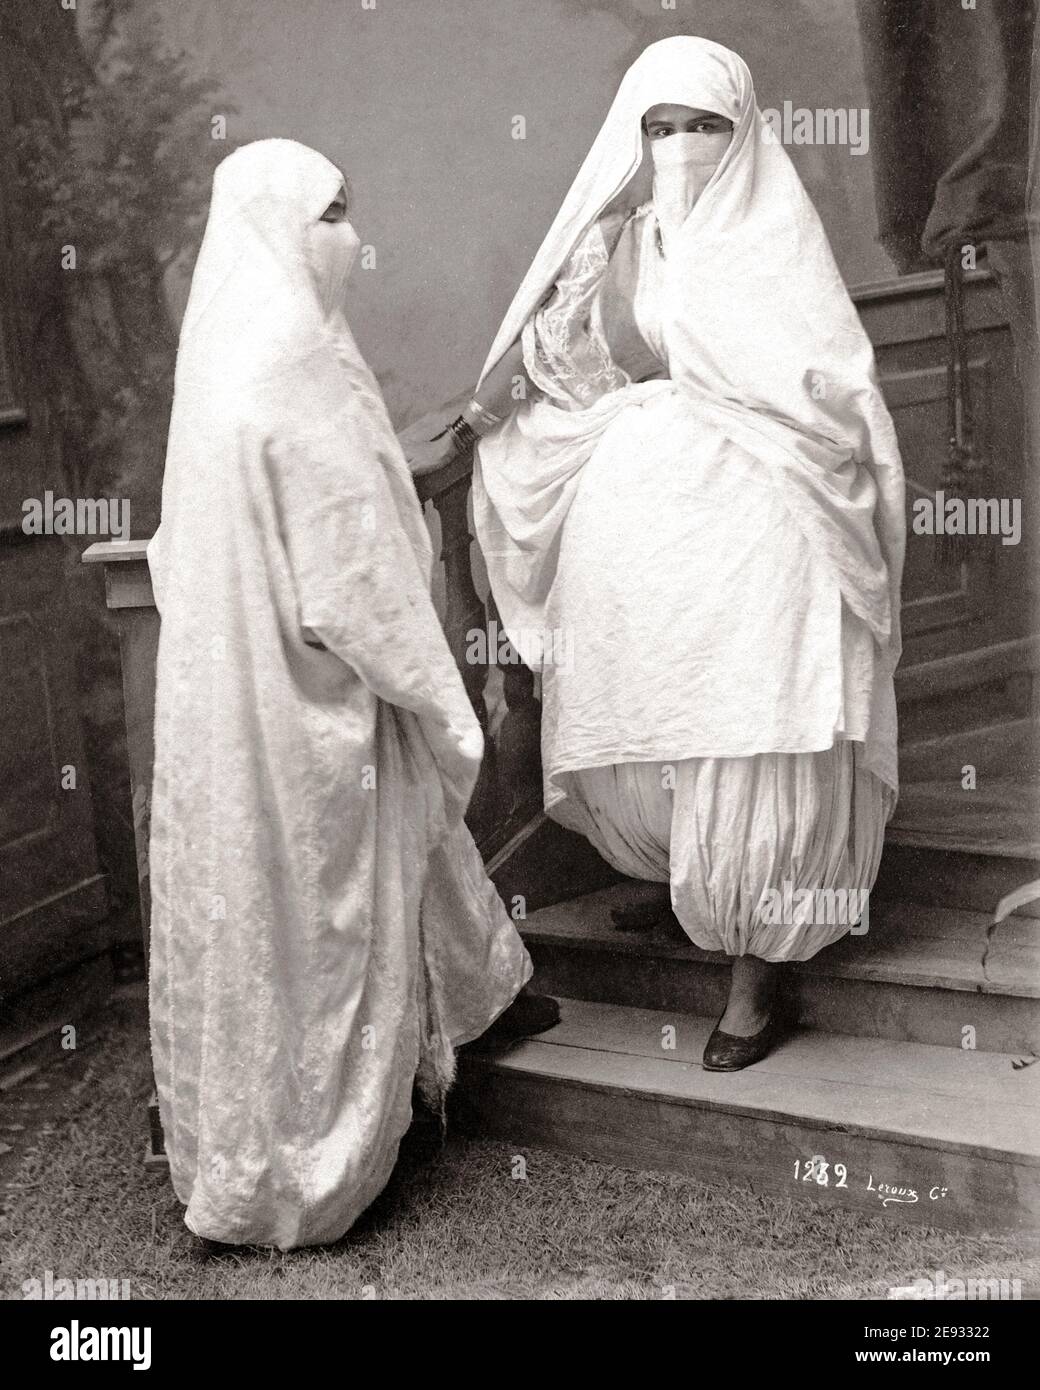 Photographie de la fin du XIXe siècle - femmes voilées, Algérie Banque D'Images